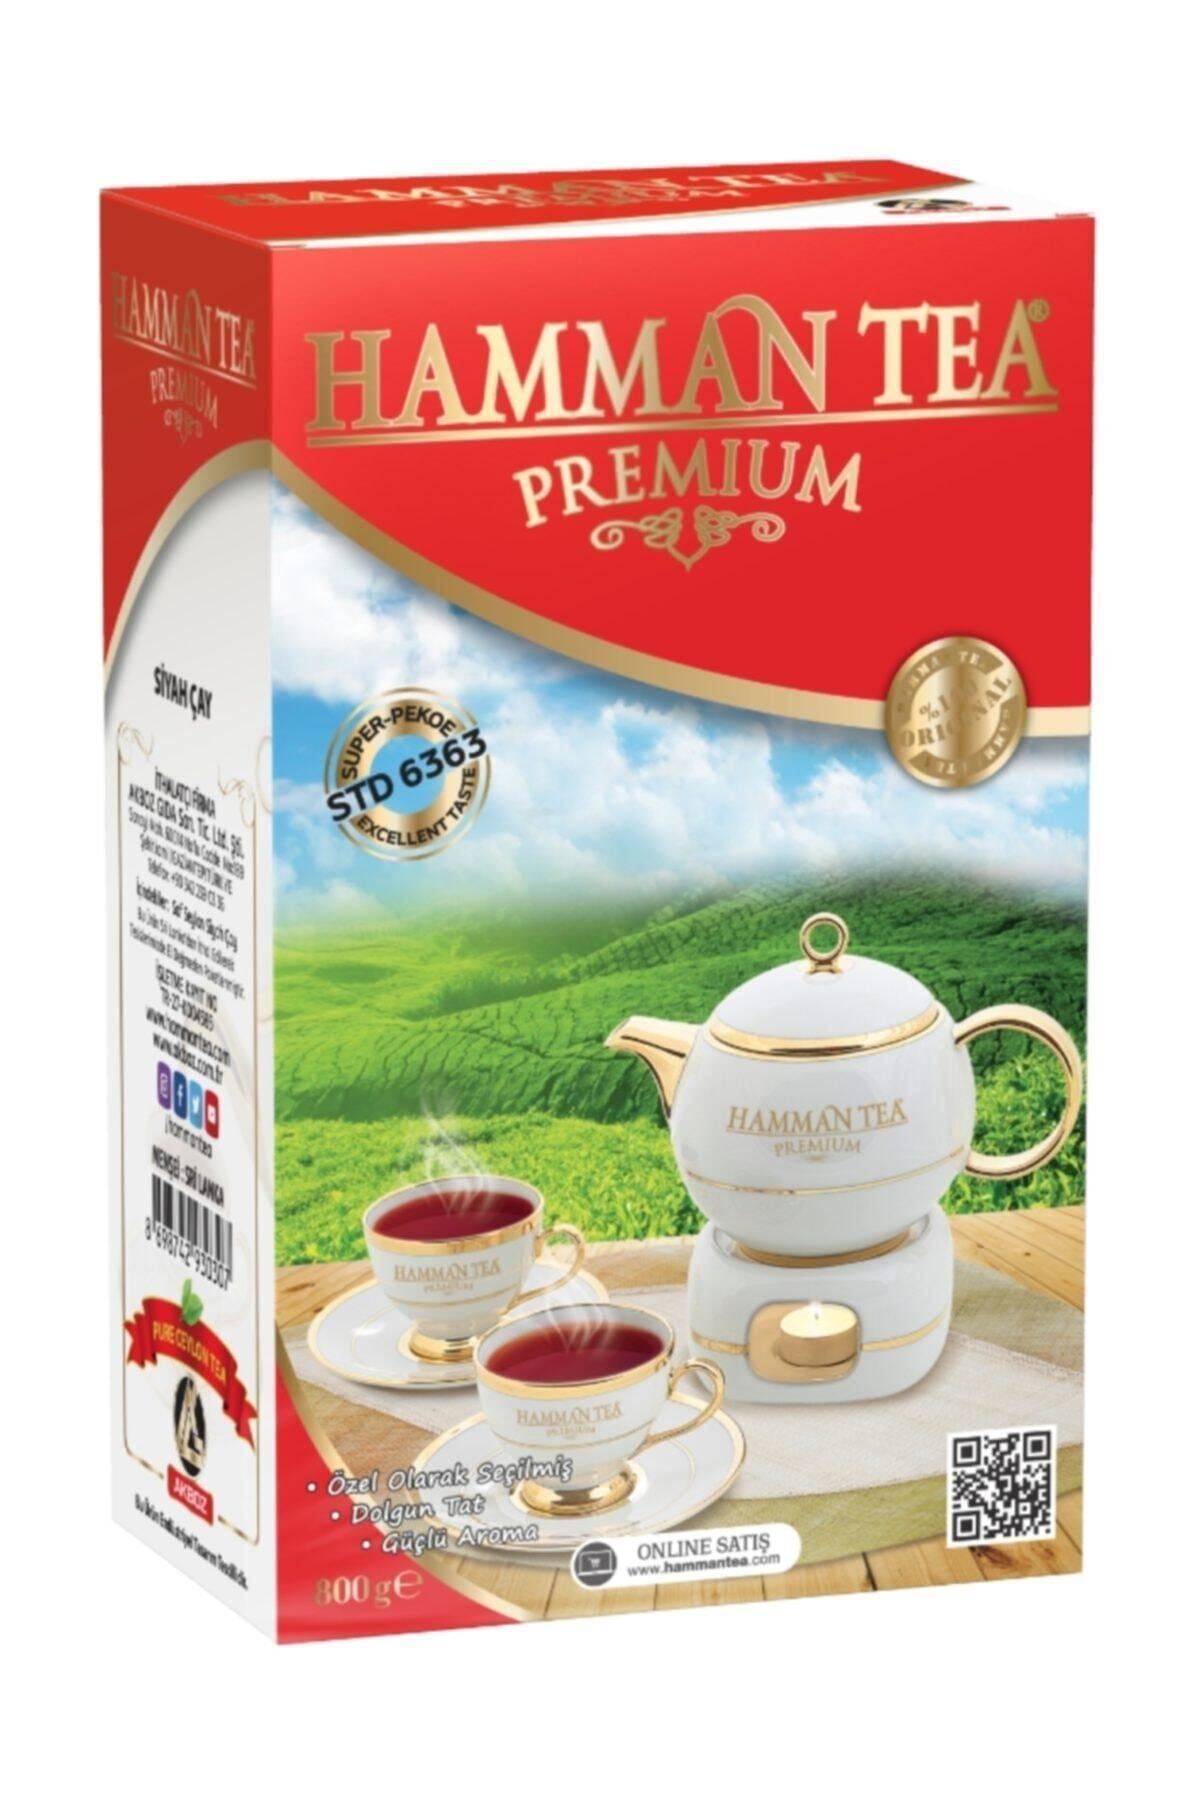 HAMMAN TEA Çay Garantili  Premium 800 gr'lık Saf Seylan Çayı